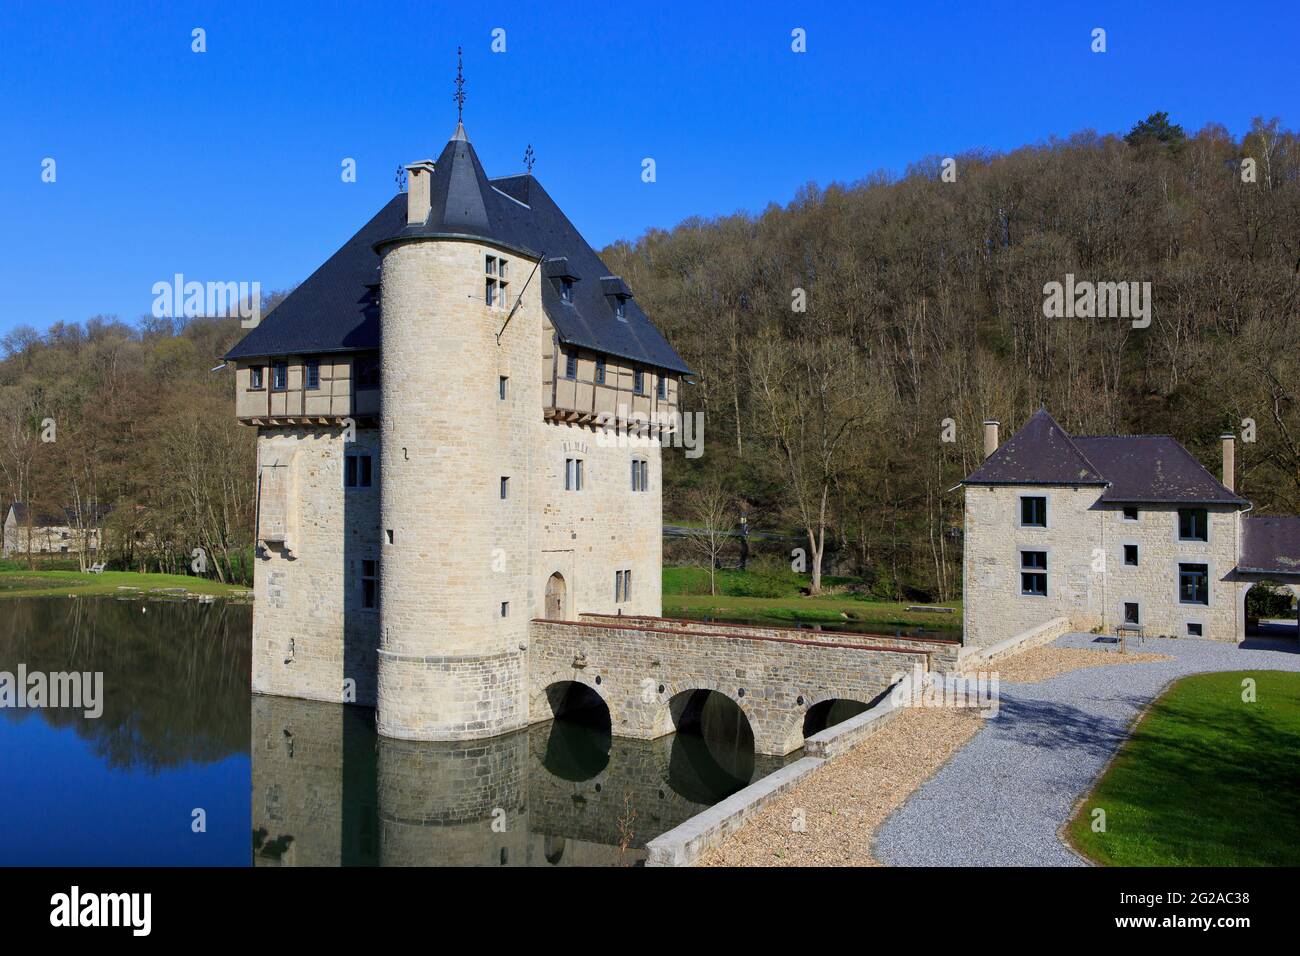 Le pittoresque château de Crupet du XIIIe siècle à Assise (province de Namur), en Belgique Banque D'Images